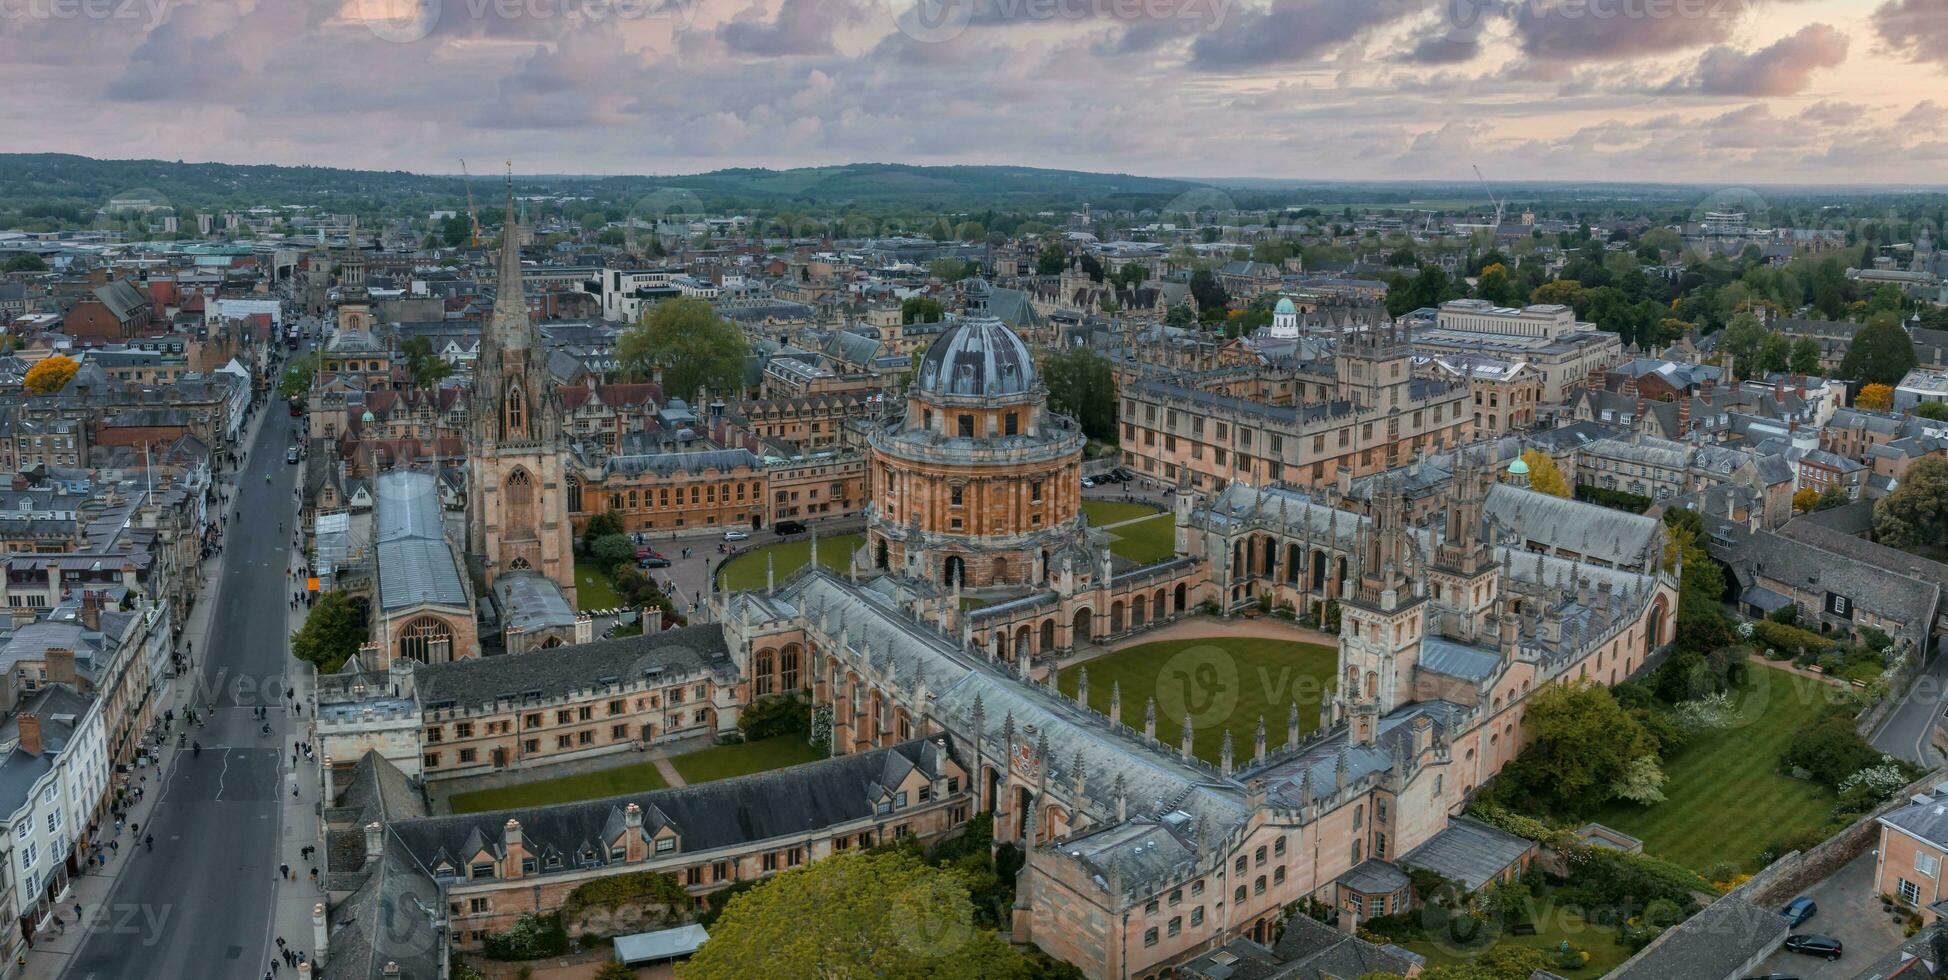 Antenne Aussicht Über das Stadt von Oxford mit Oxford Universität. foto